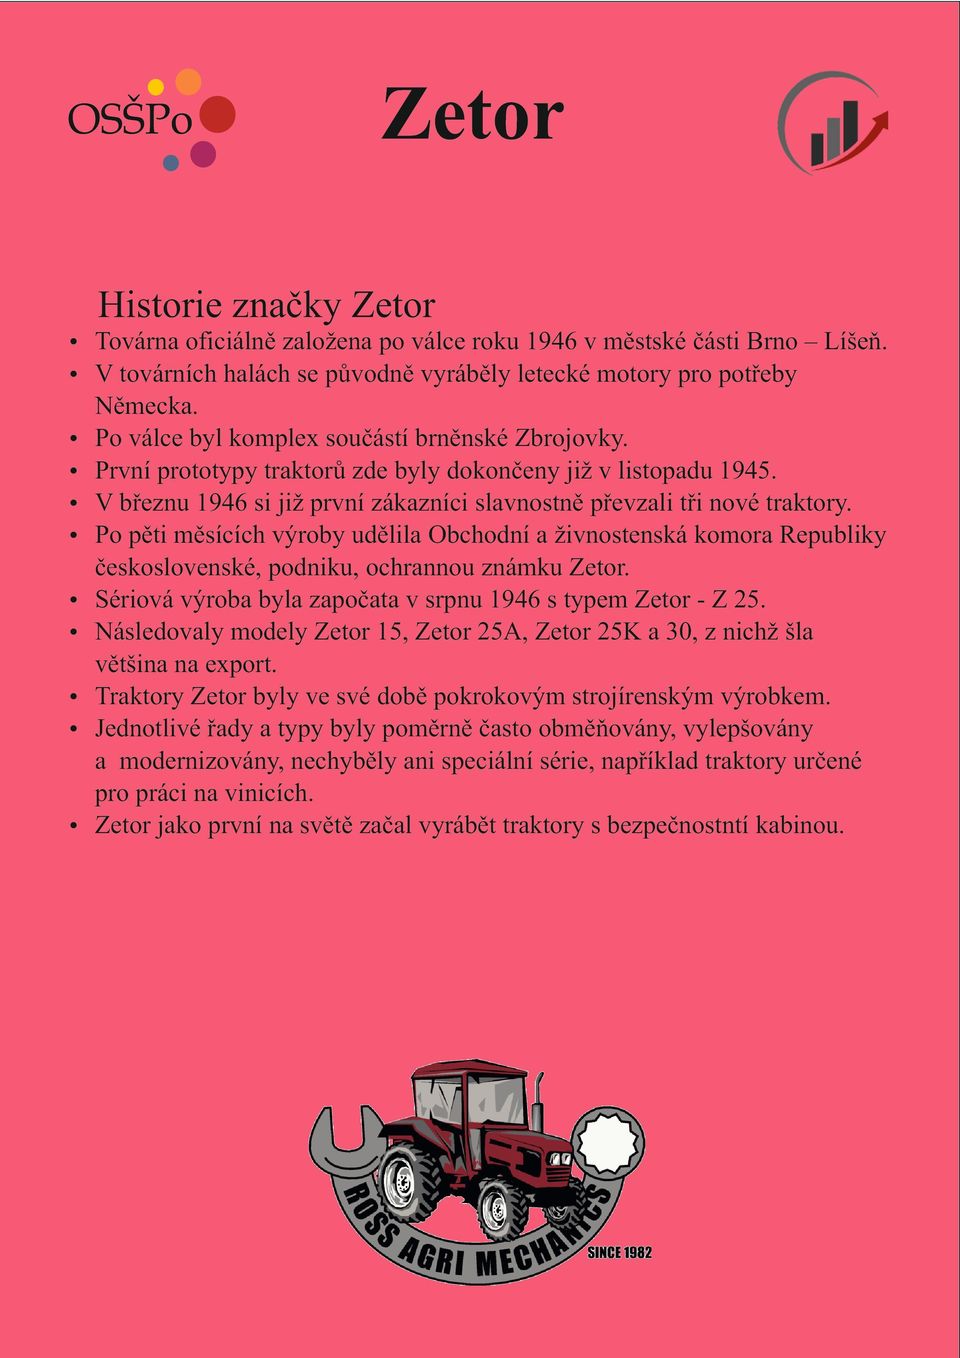 Po pěti měsících výroby udělila Obchodní a živnostenská komora Republiky československé, podniku, ochrannou známku Zetor. Sériová výroba byla započata v srpnu 1946 s typem Zetor - Z 25.